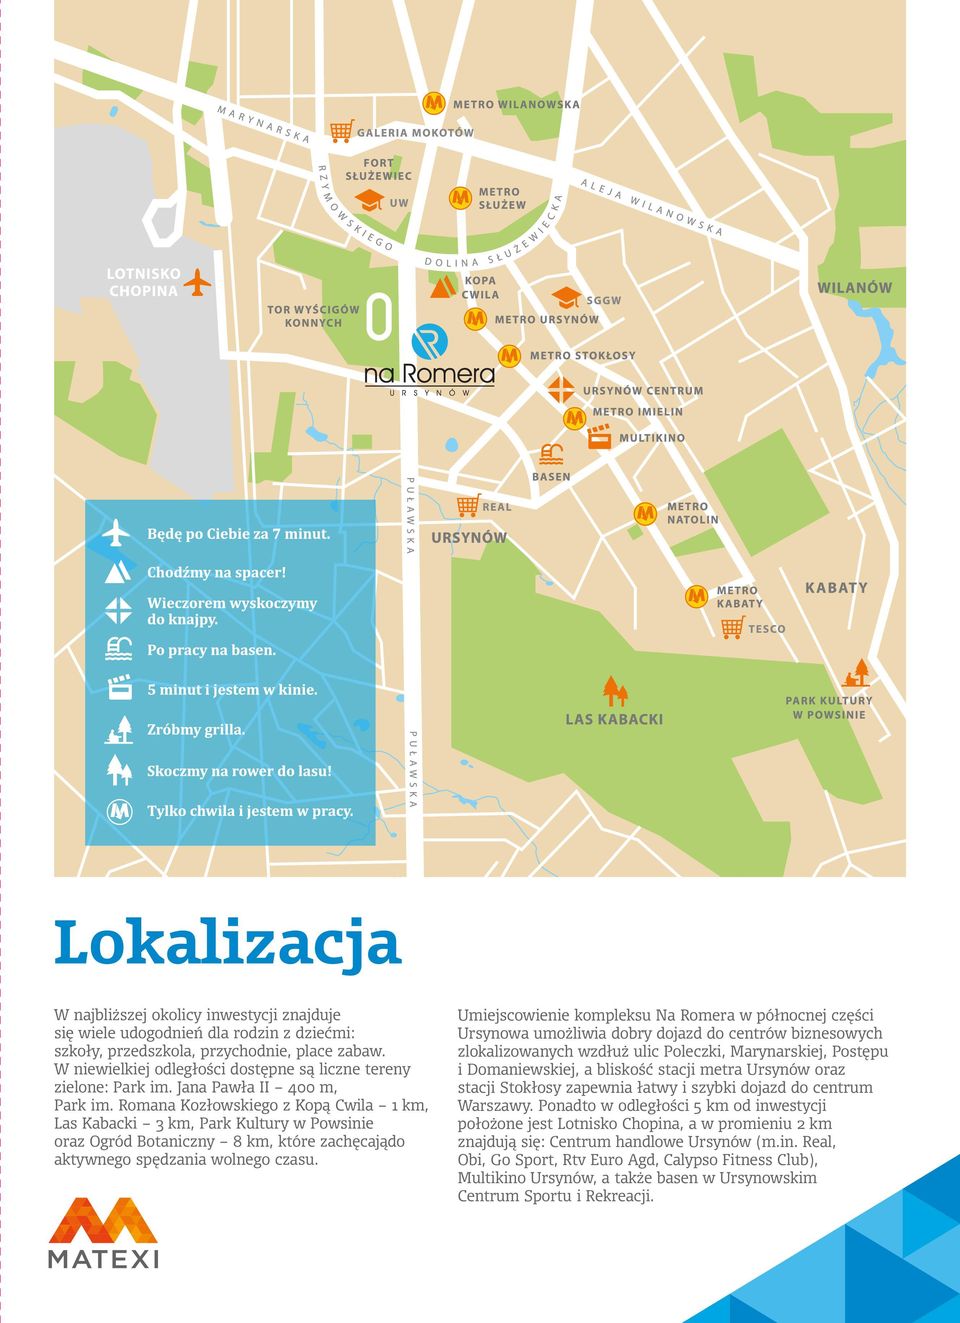 Romana Kozłowskiego z Kopą Cwila 1 km, Las Kabacki 3 km, Park Kultury w Powsinie oraz Ogród Botaniczny 8 km, które zachęcajądo aktywnego spędzania wolnego czasu.